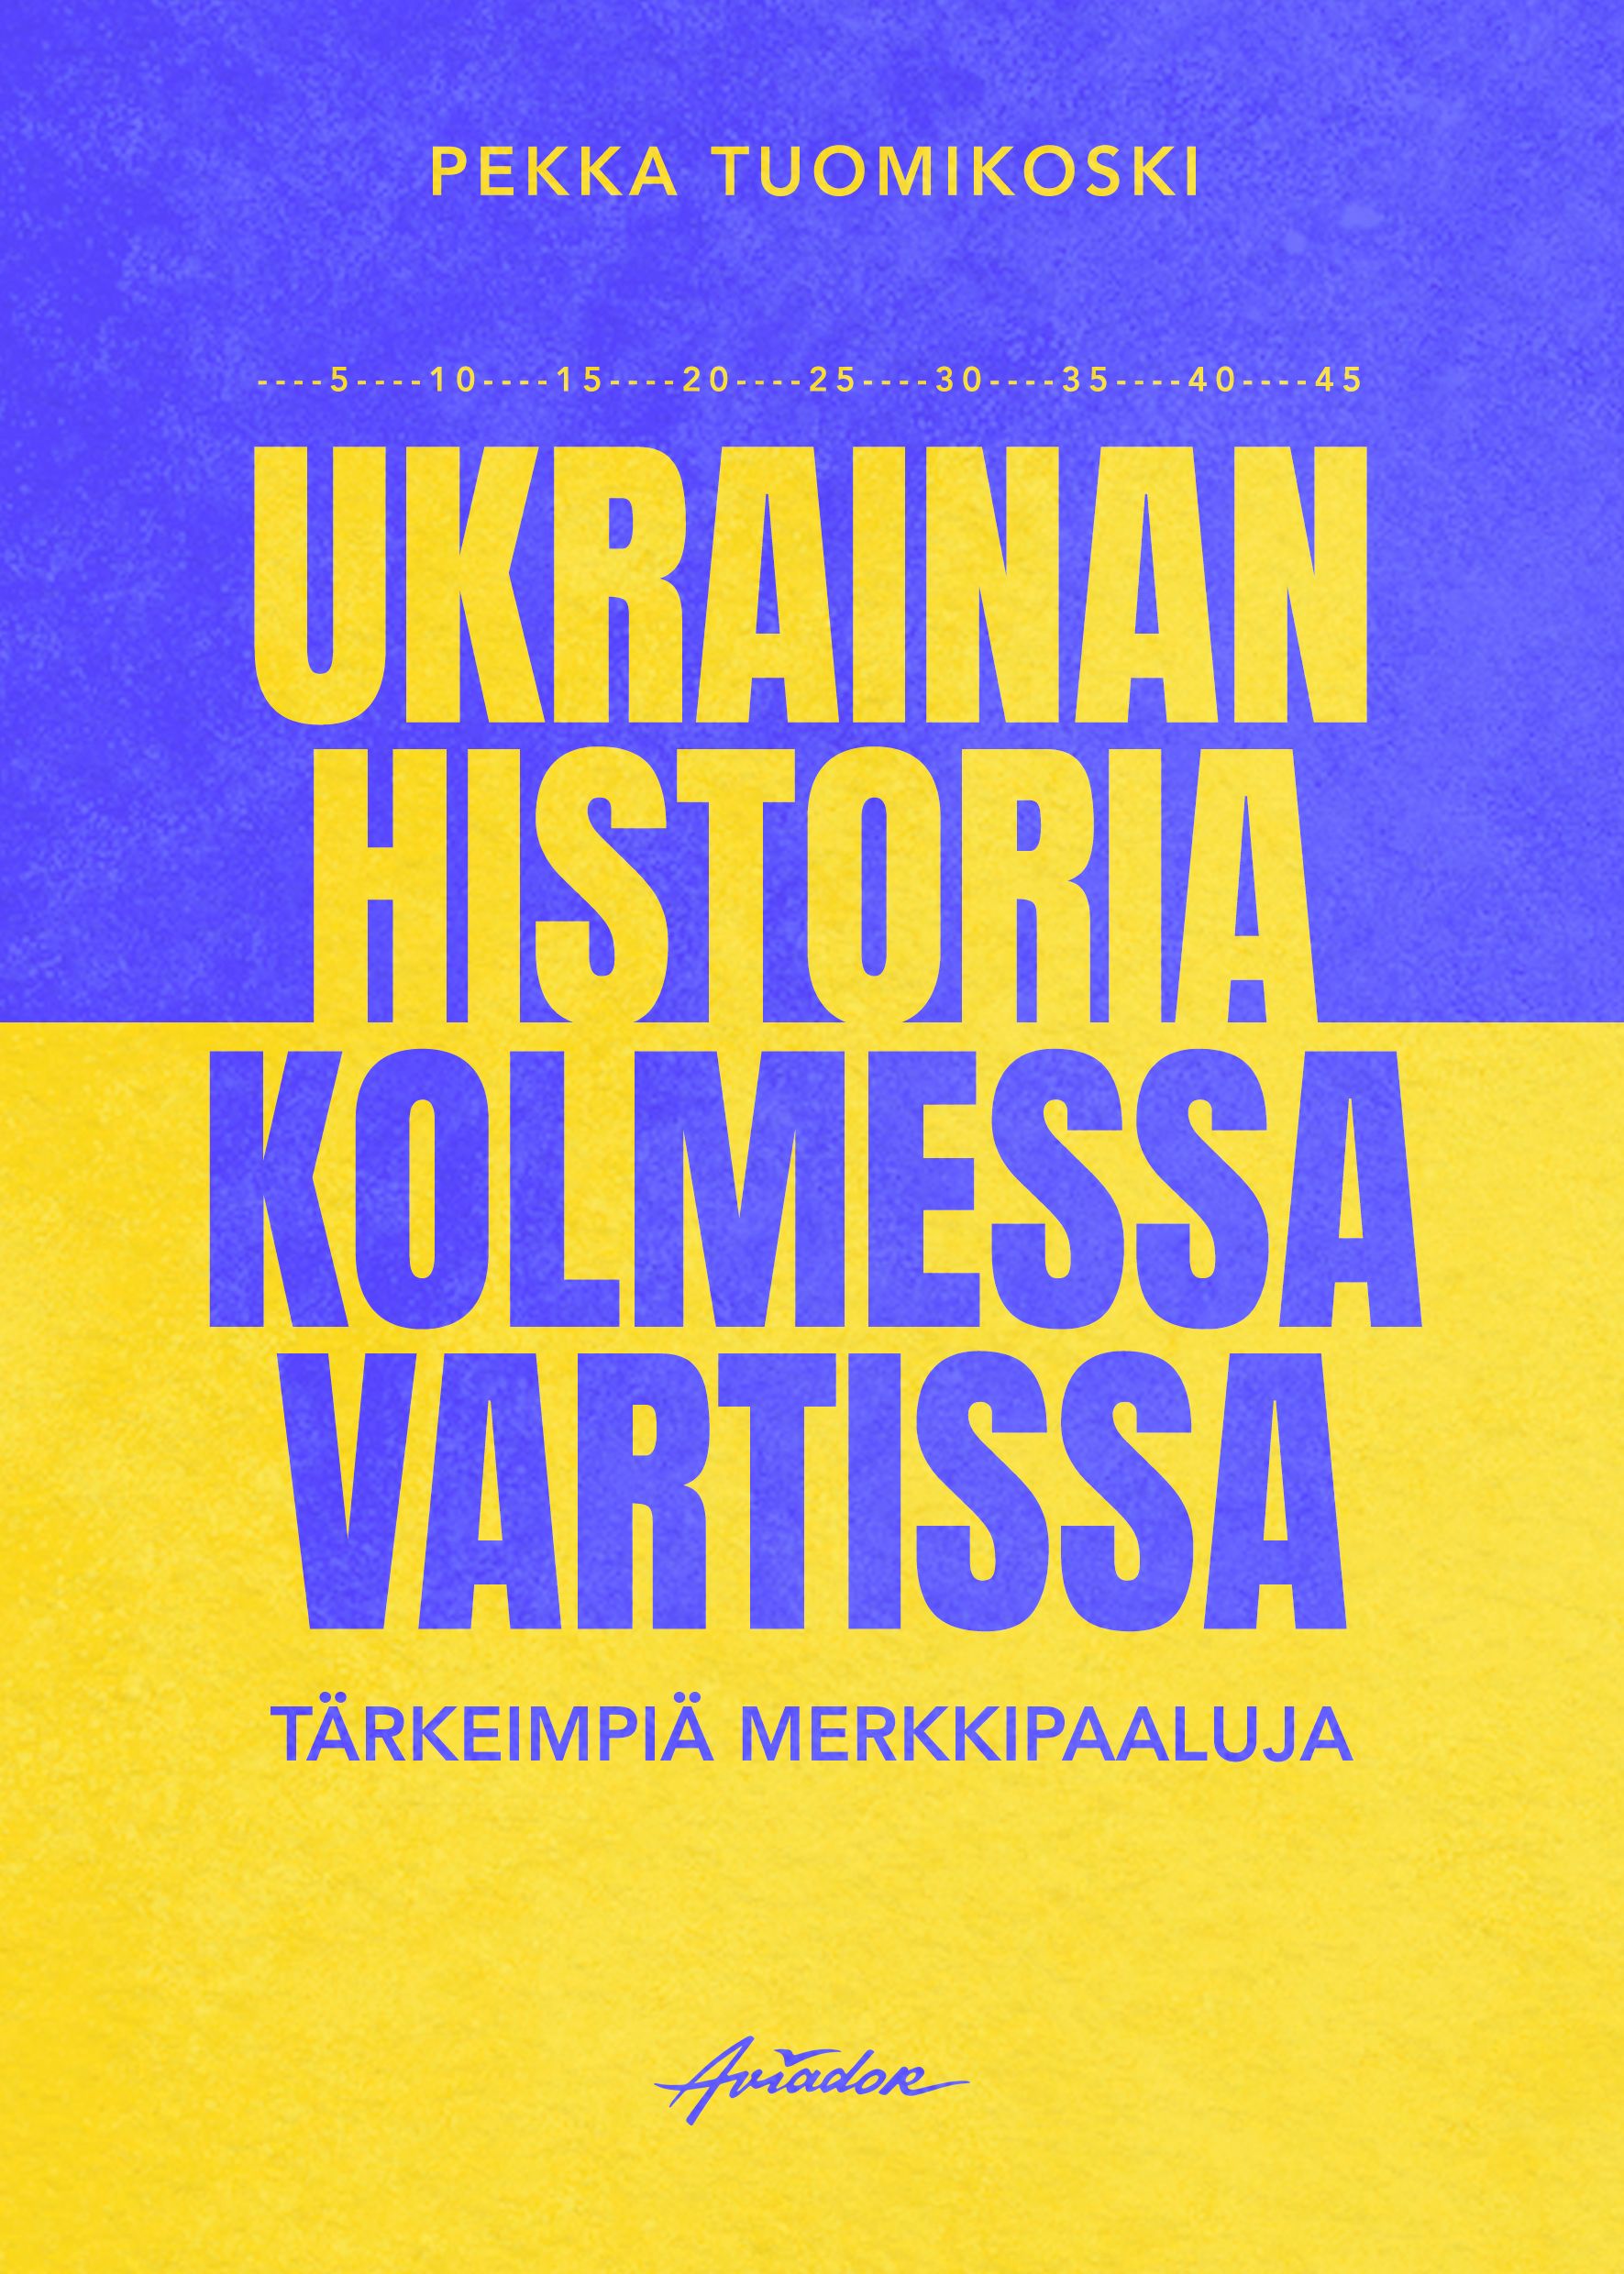 Pekka Tuomikoski : Ukrainan historia kolmessa vartissa